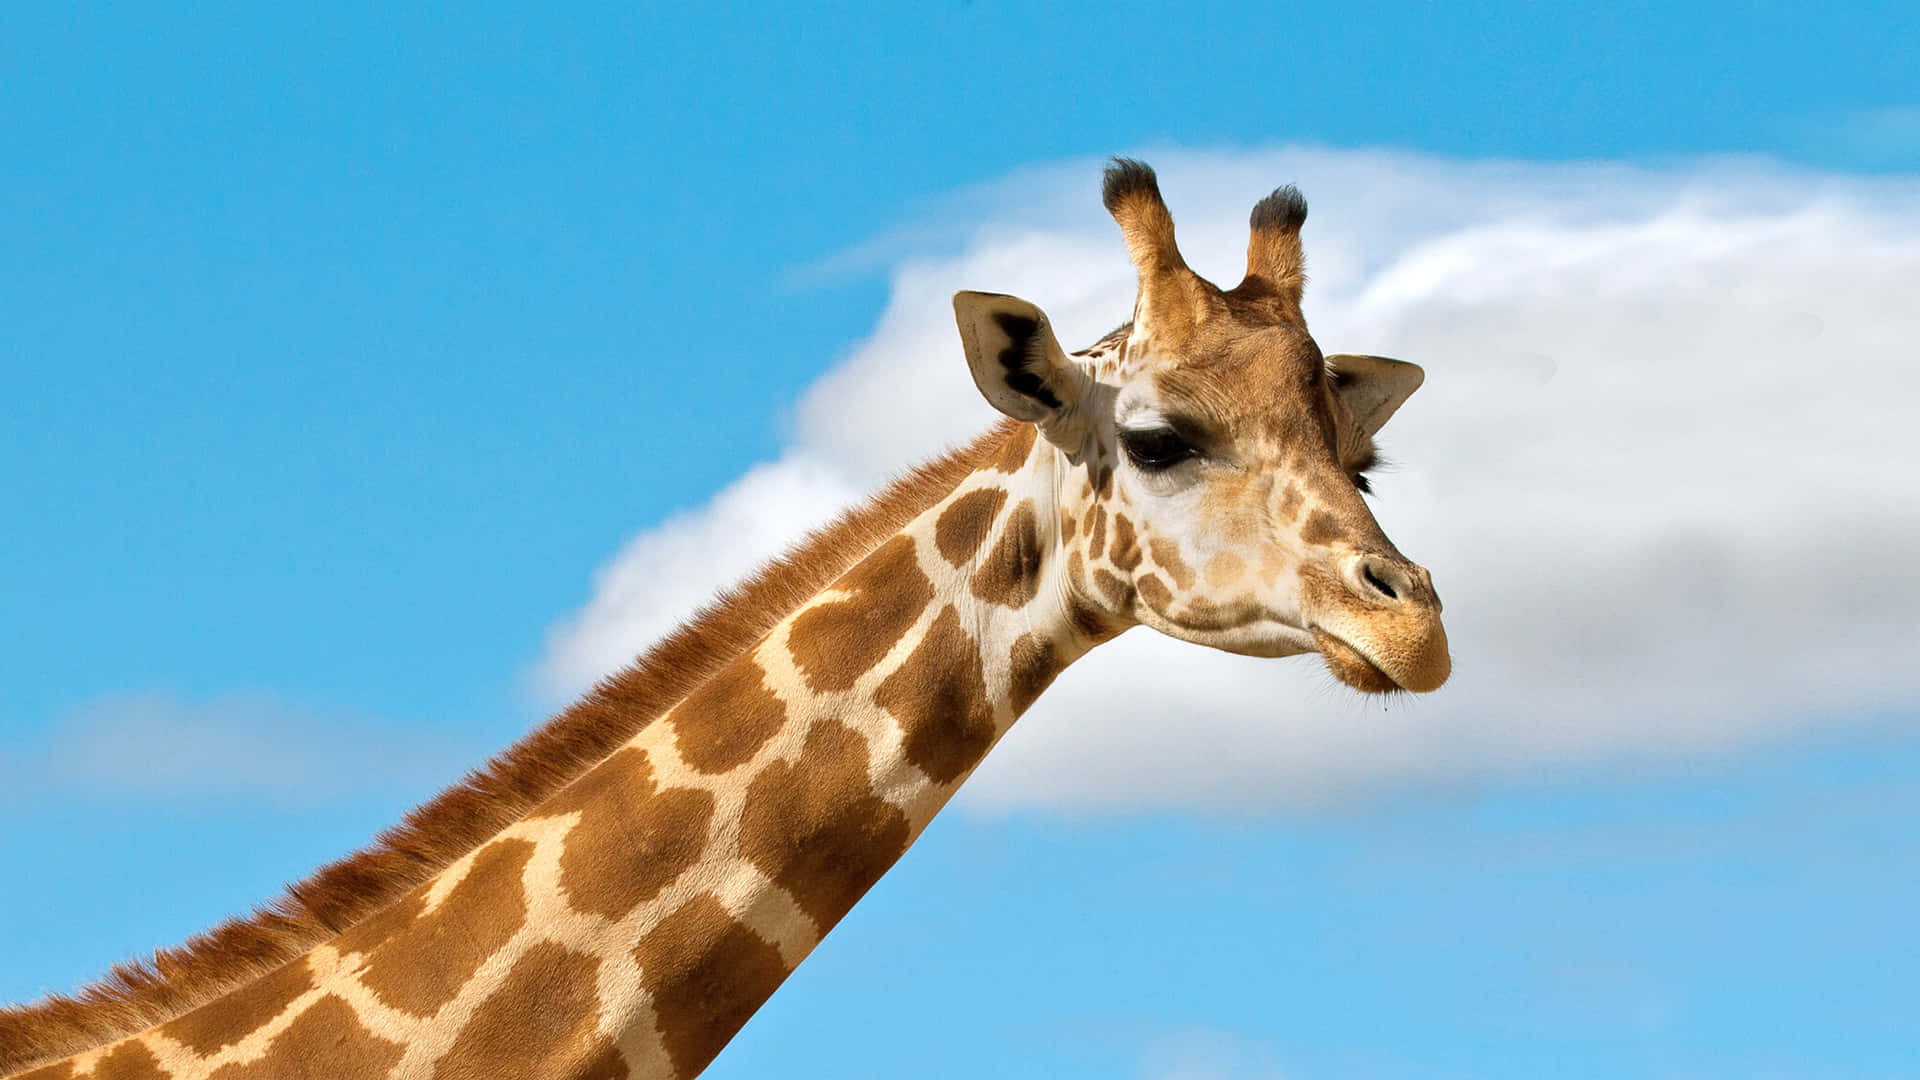 Giraffe Under A Beautiful Sky pIcture